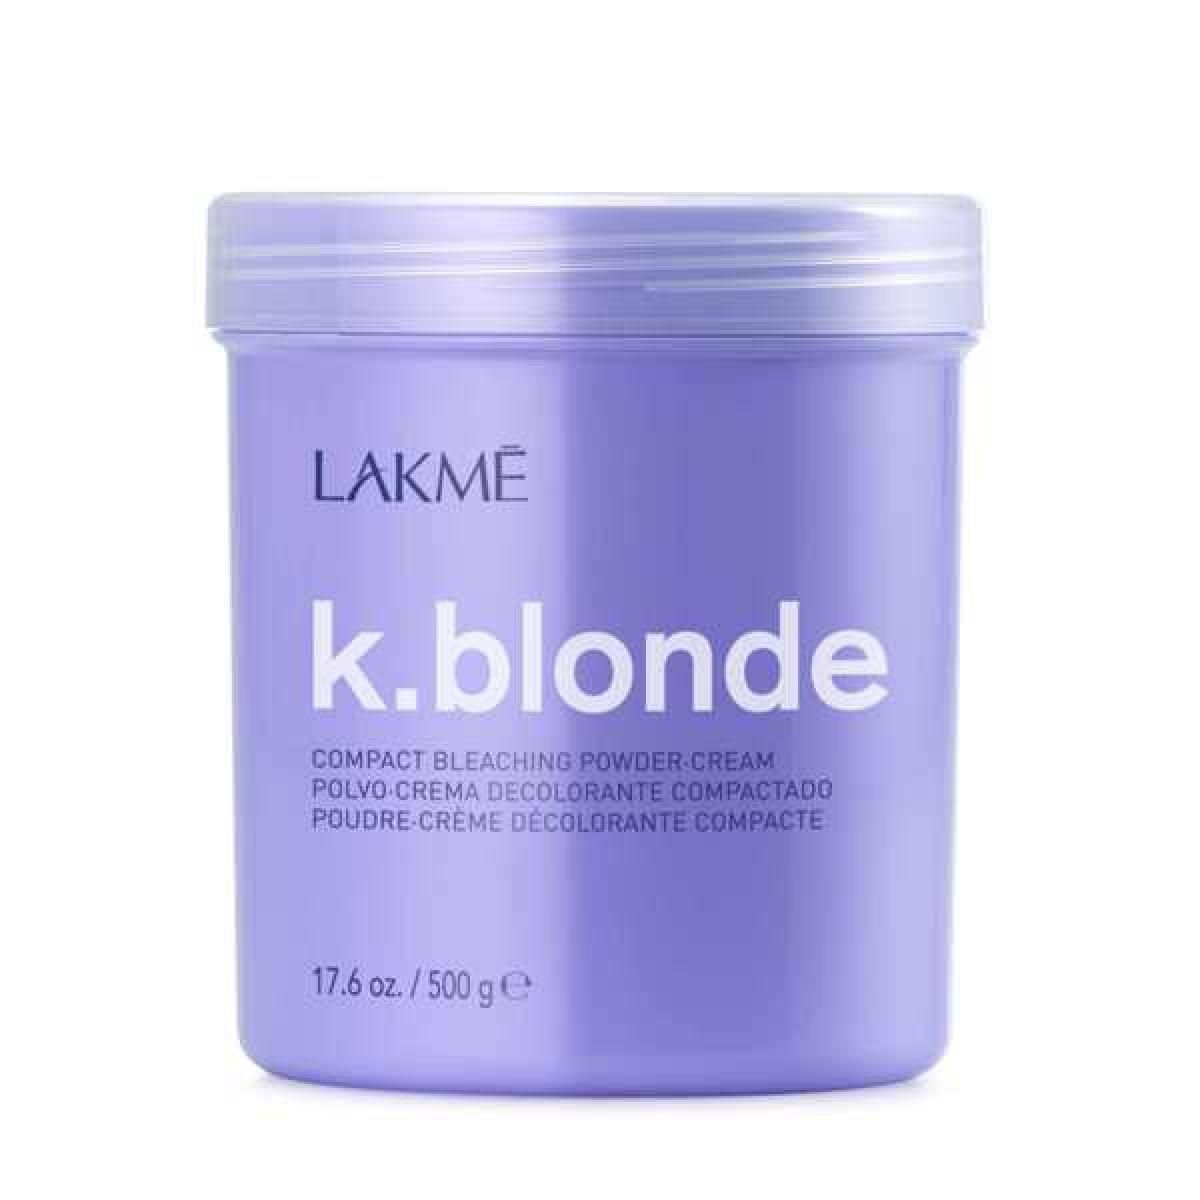 Lakmé K.blonde szőkítőpor 500g